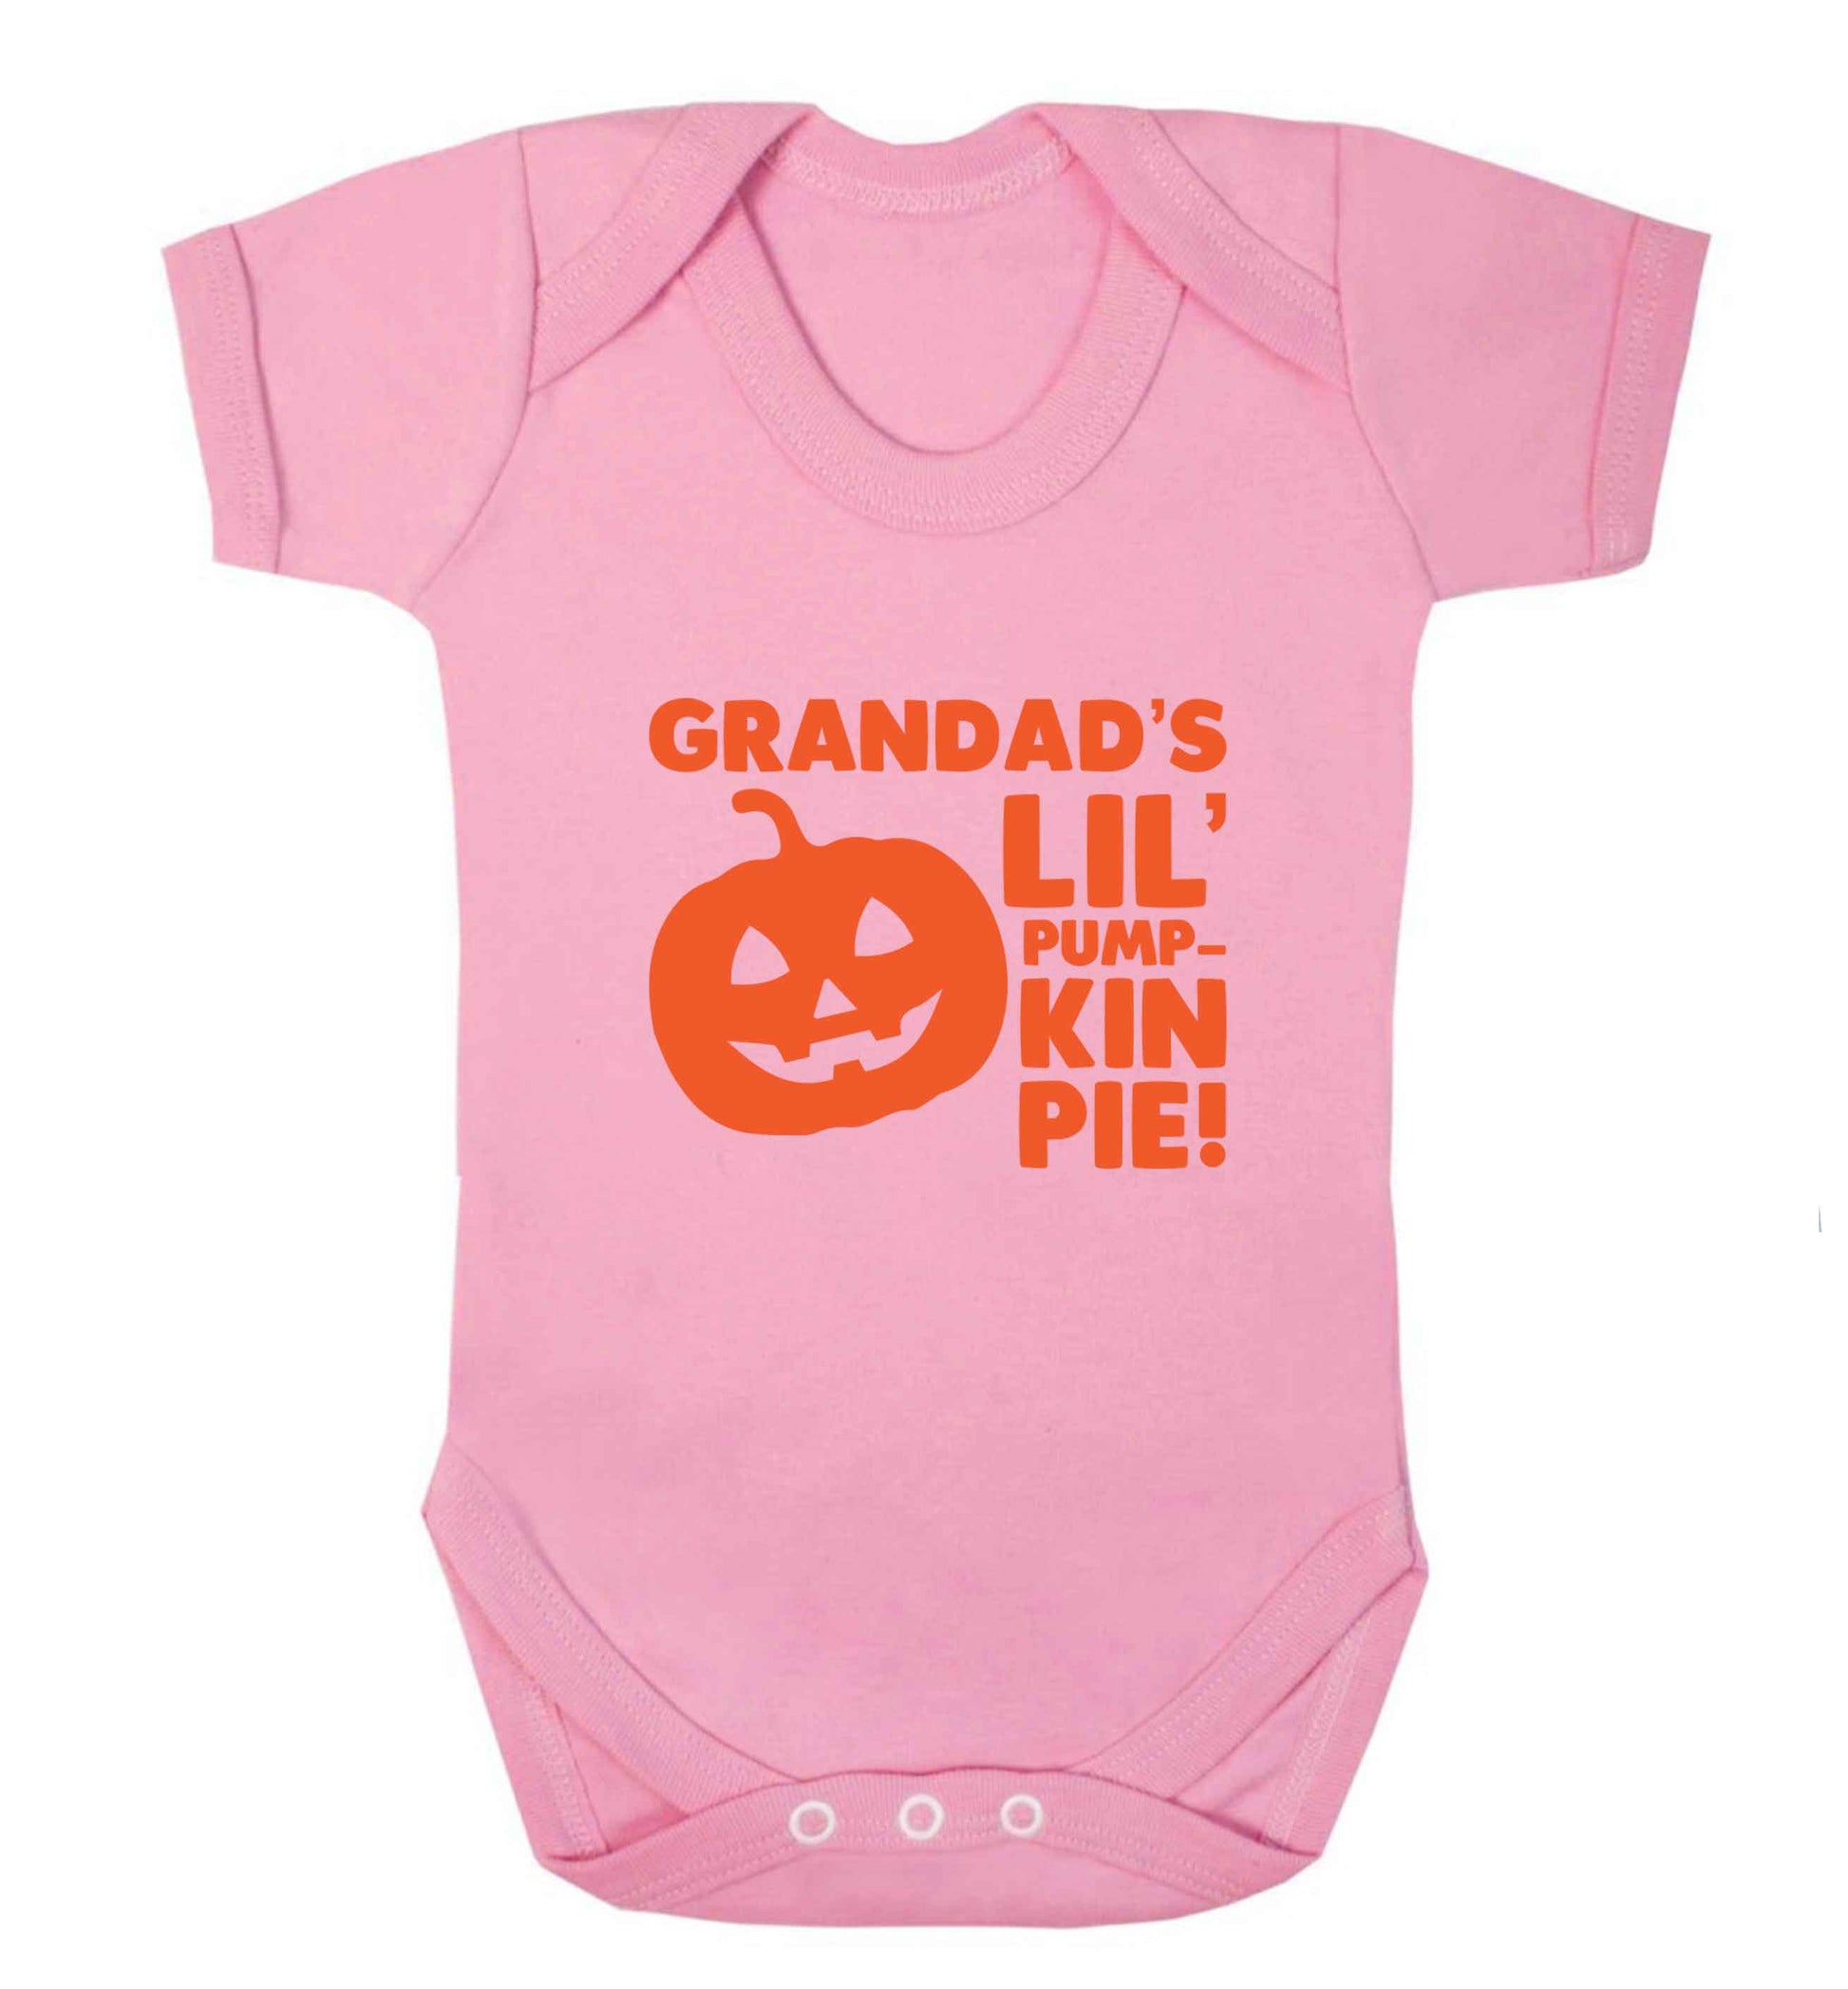 Daddy's lil' pumpkin pie baby vest pale pink 18-24 months